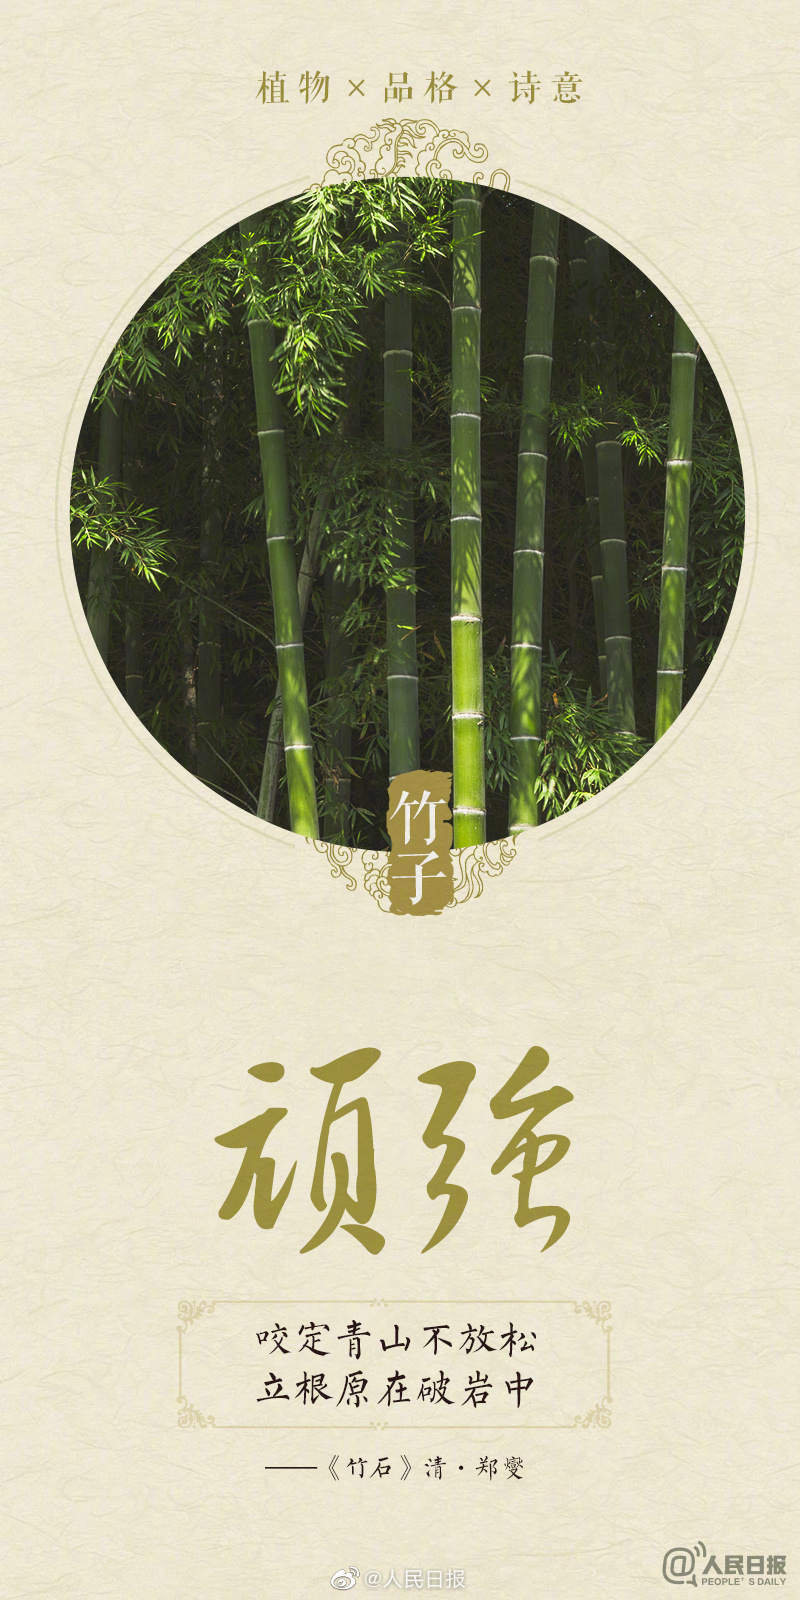 诗意满满！今天植树节，感受植物中的中国式浪漫